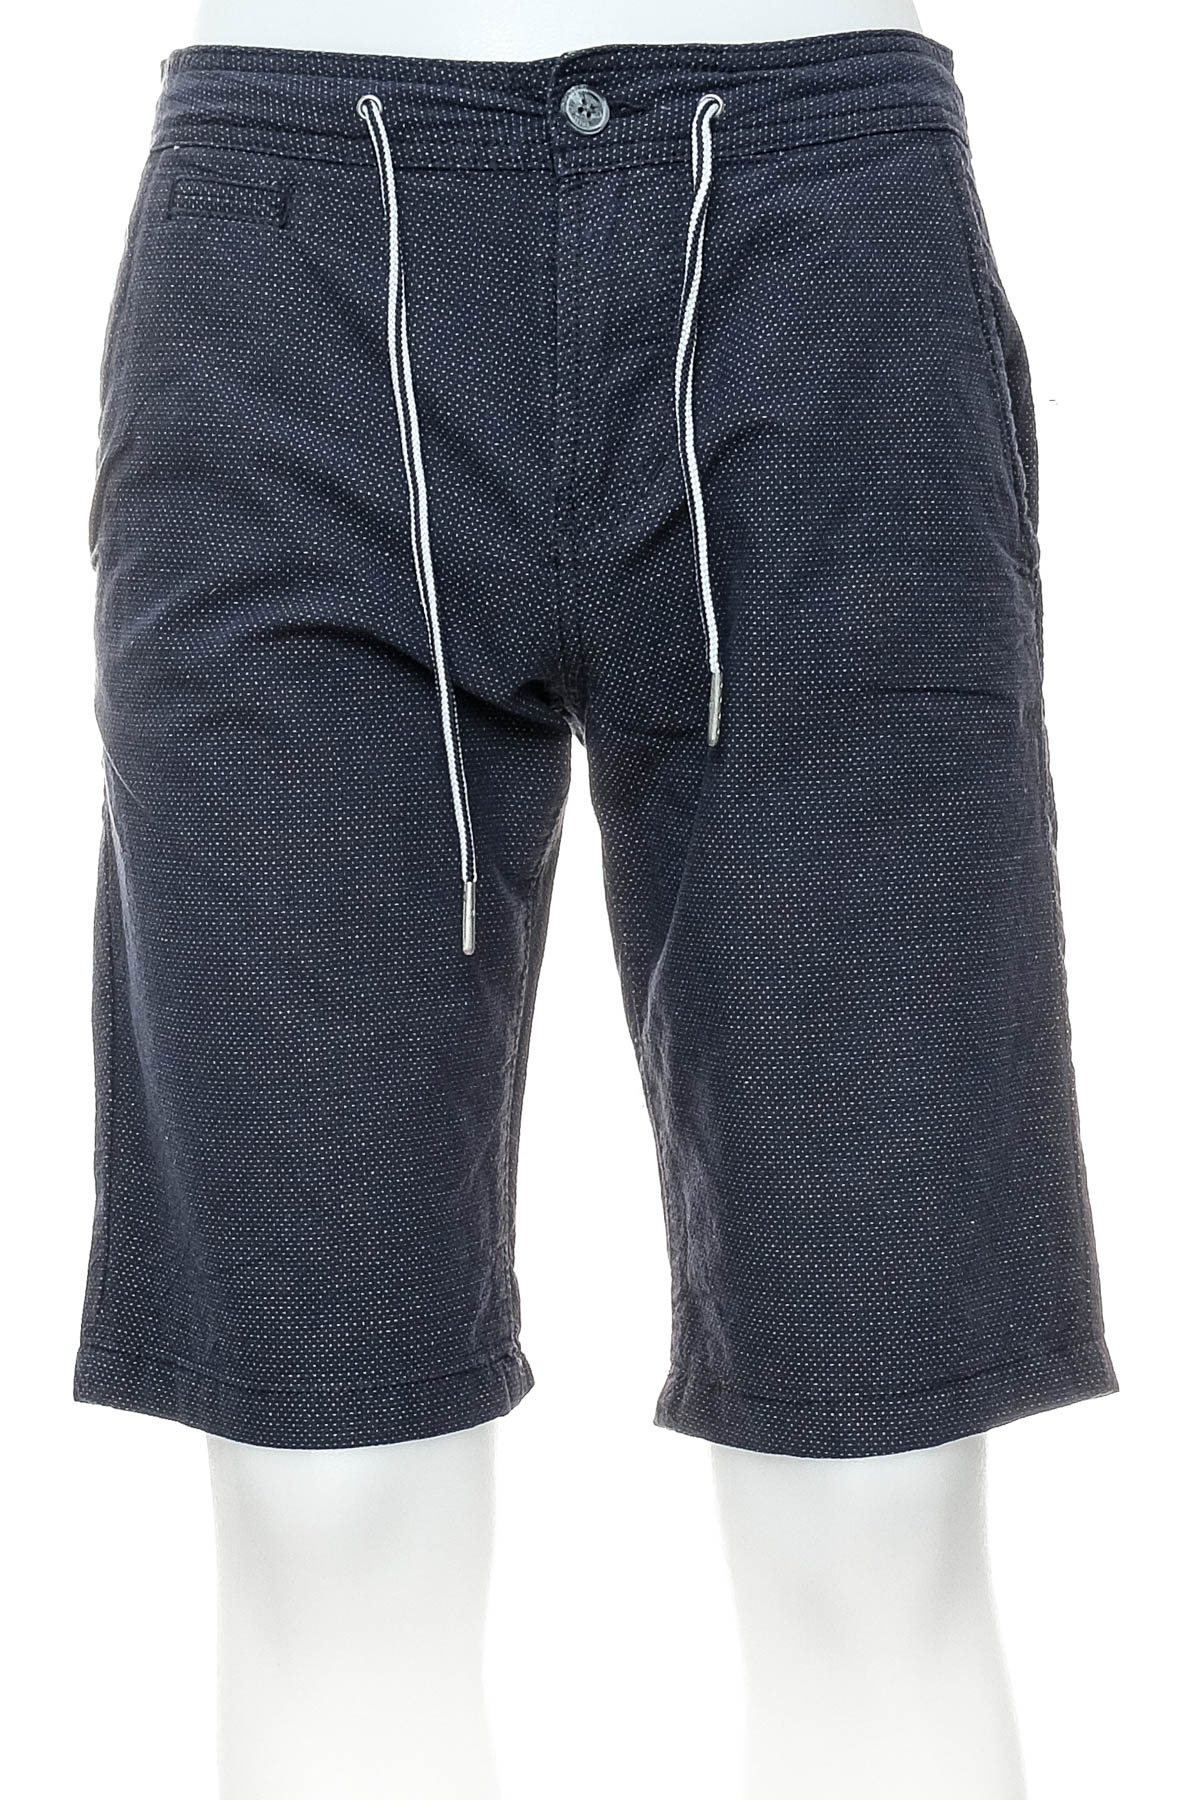 Men's shorts - TOM TAILOR Denim - 0